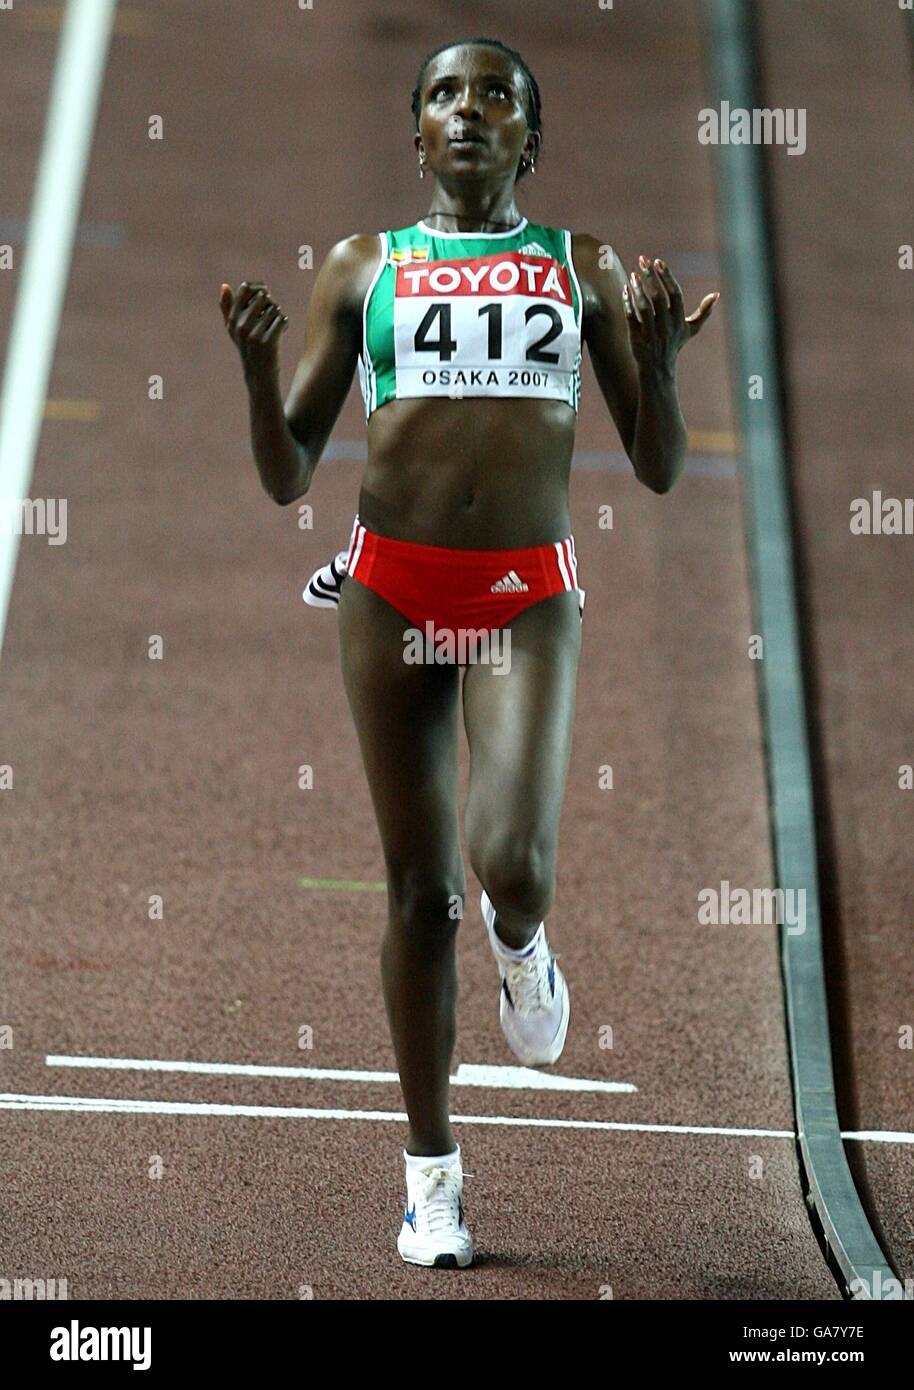 Athlétisme - Championnats du monde d'athlétisme de l'IAAF - Osaka 2007 - Stade Nagai.Tirunesh Dibaba, en Éthiopie, traverse la ligne pour gagner la finale de 10,000 mètres des femmes Banque D'Images